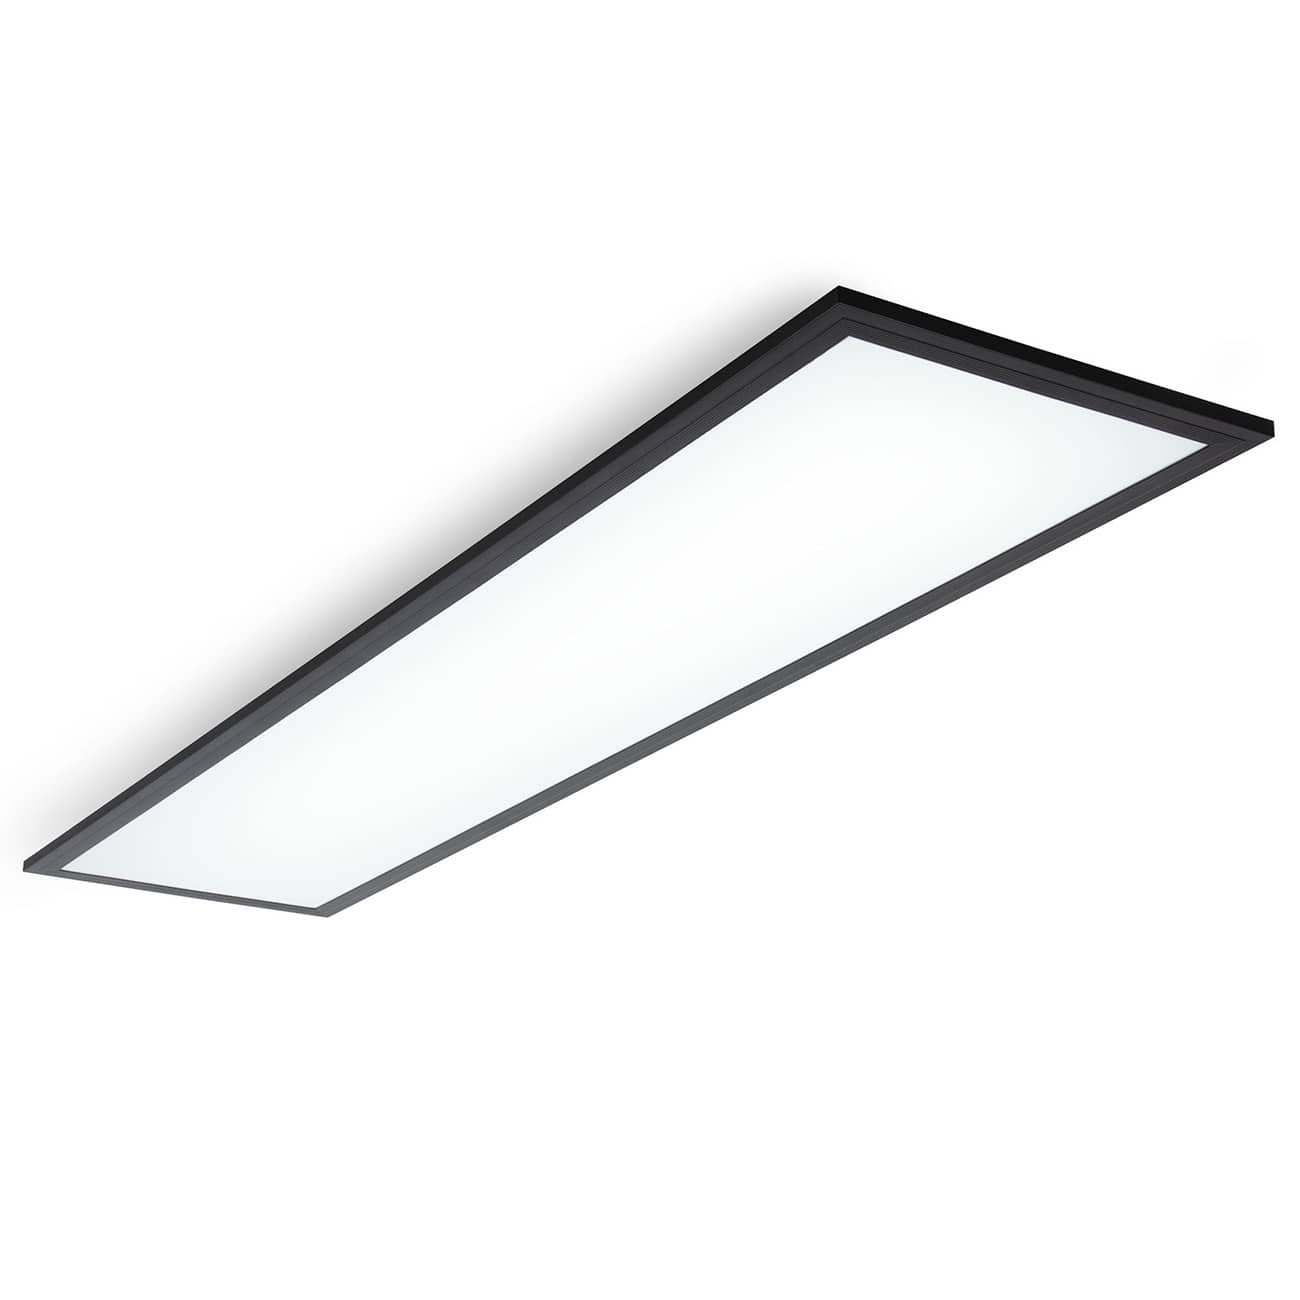 LED Decken-Panel flach - 100x25cm - Deckenleuchte 230V 22W 2200lm neutralweiße Lichtfarbe 4000K Deckenlampe Büro Küche | schwarz - 1